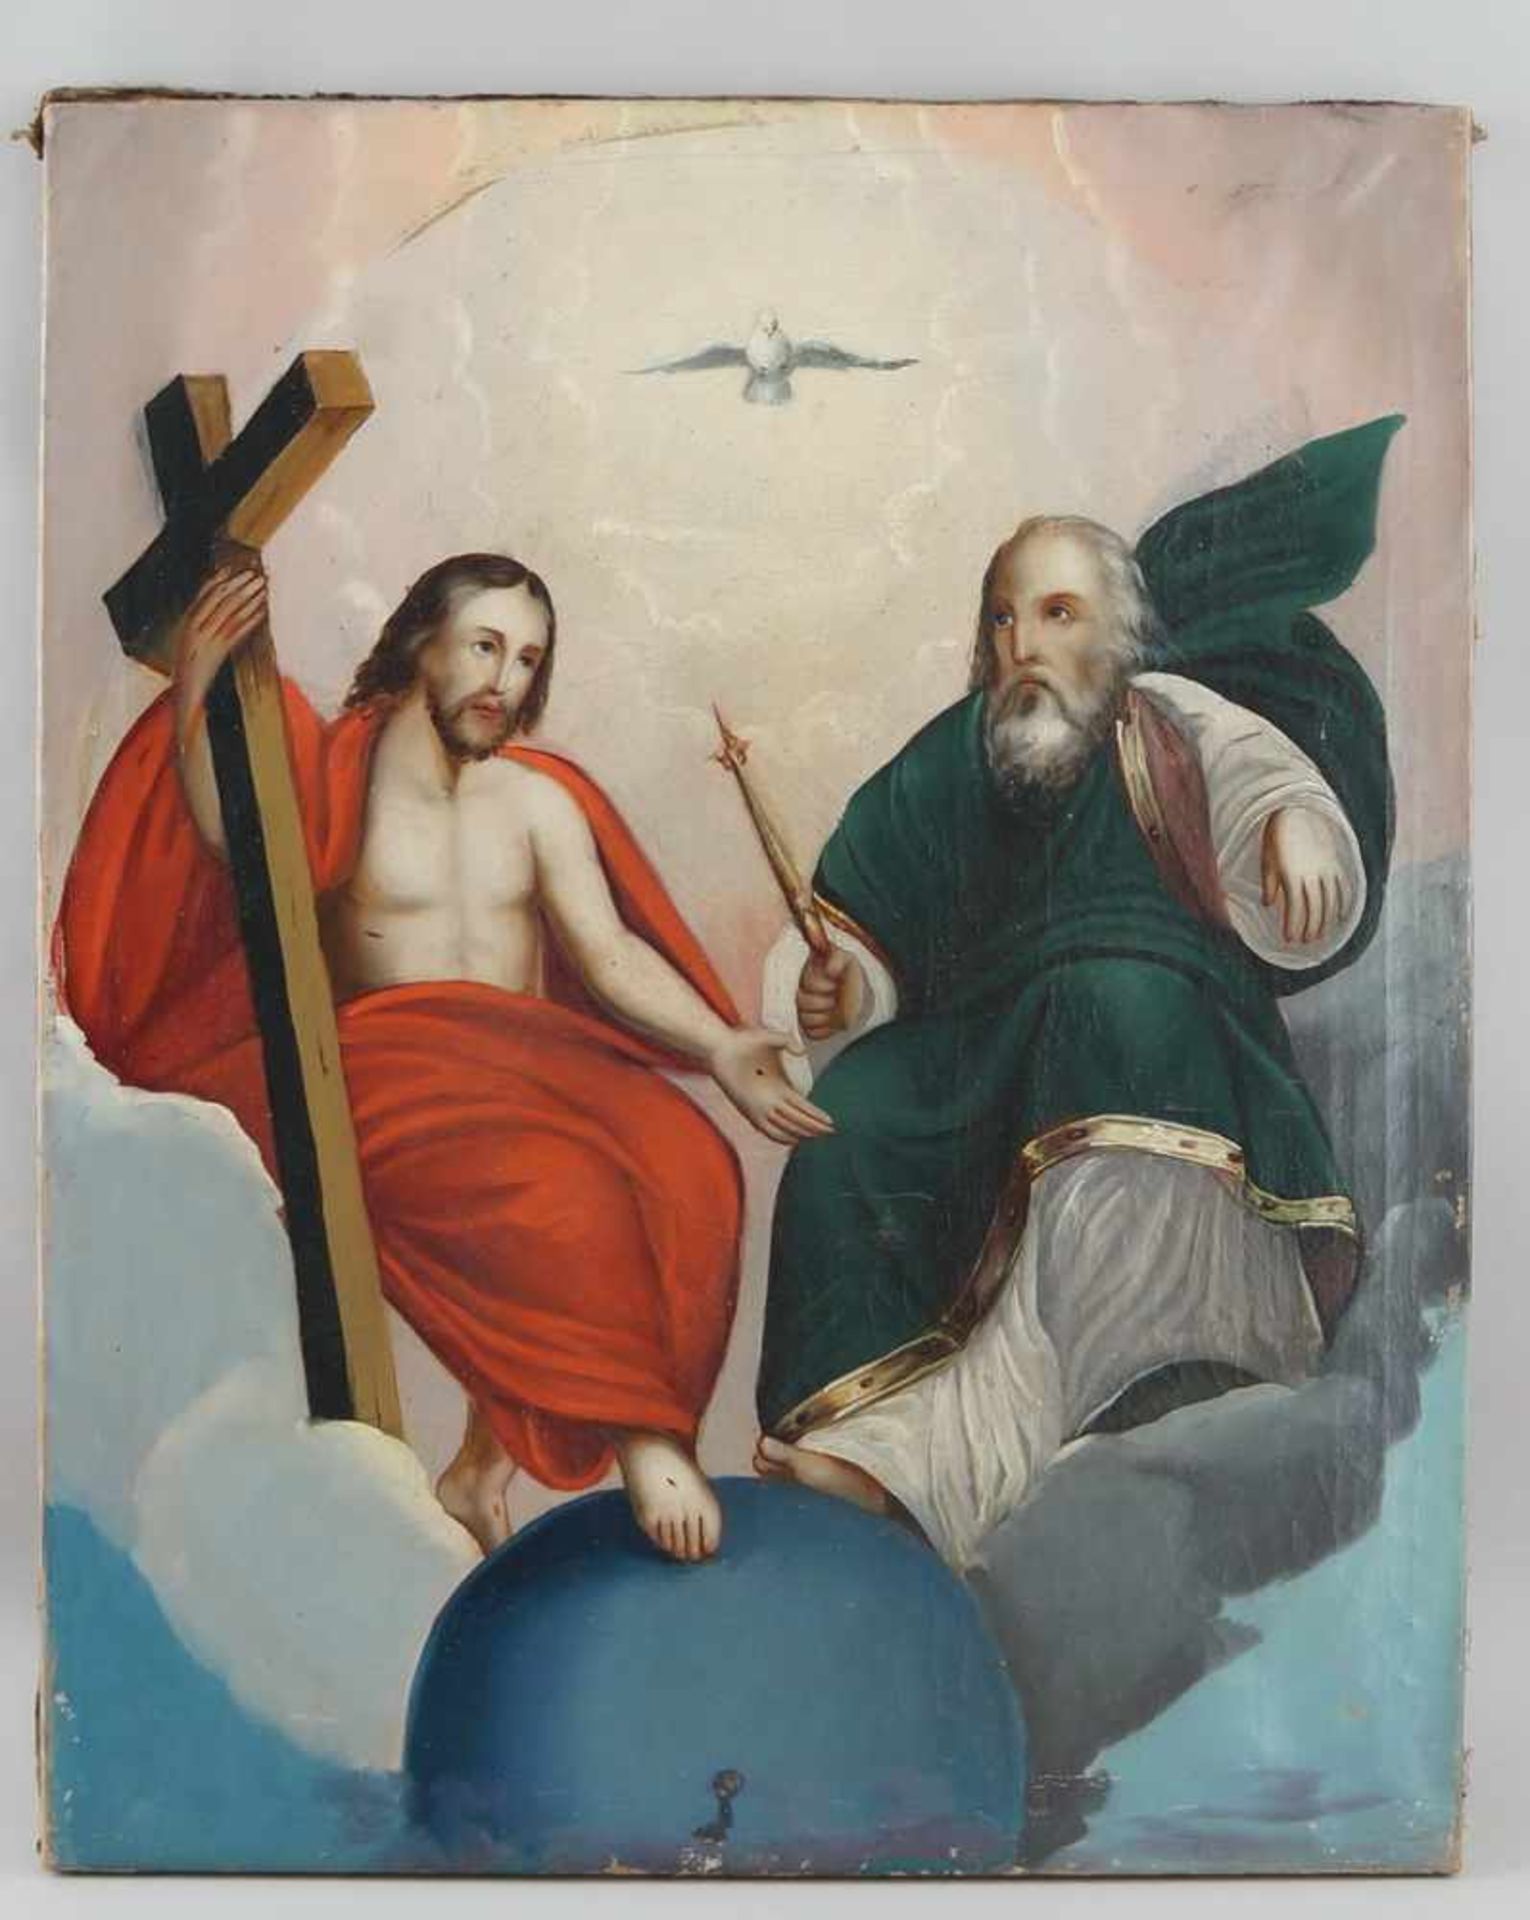 Feine Darstellung der heiligen Dreifaltigkeit, Öl auf Leinwand, 19. JH, 69x55cm- - -24.00 % buyer'